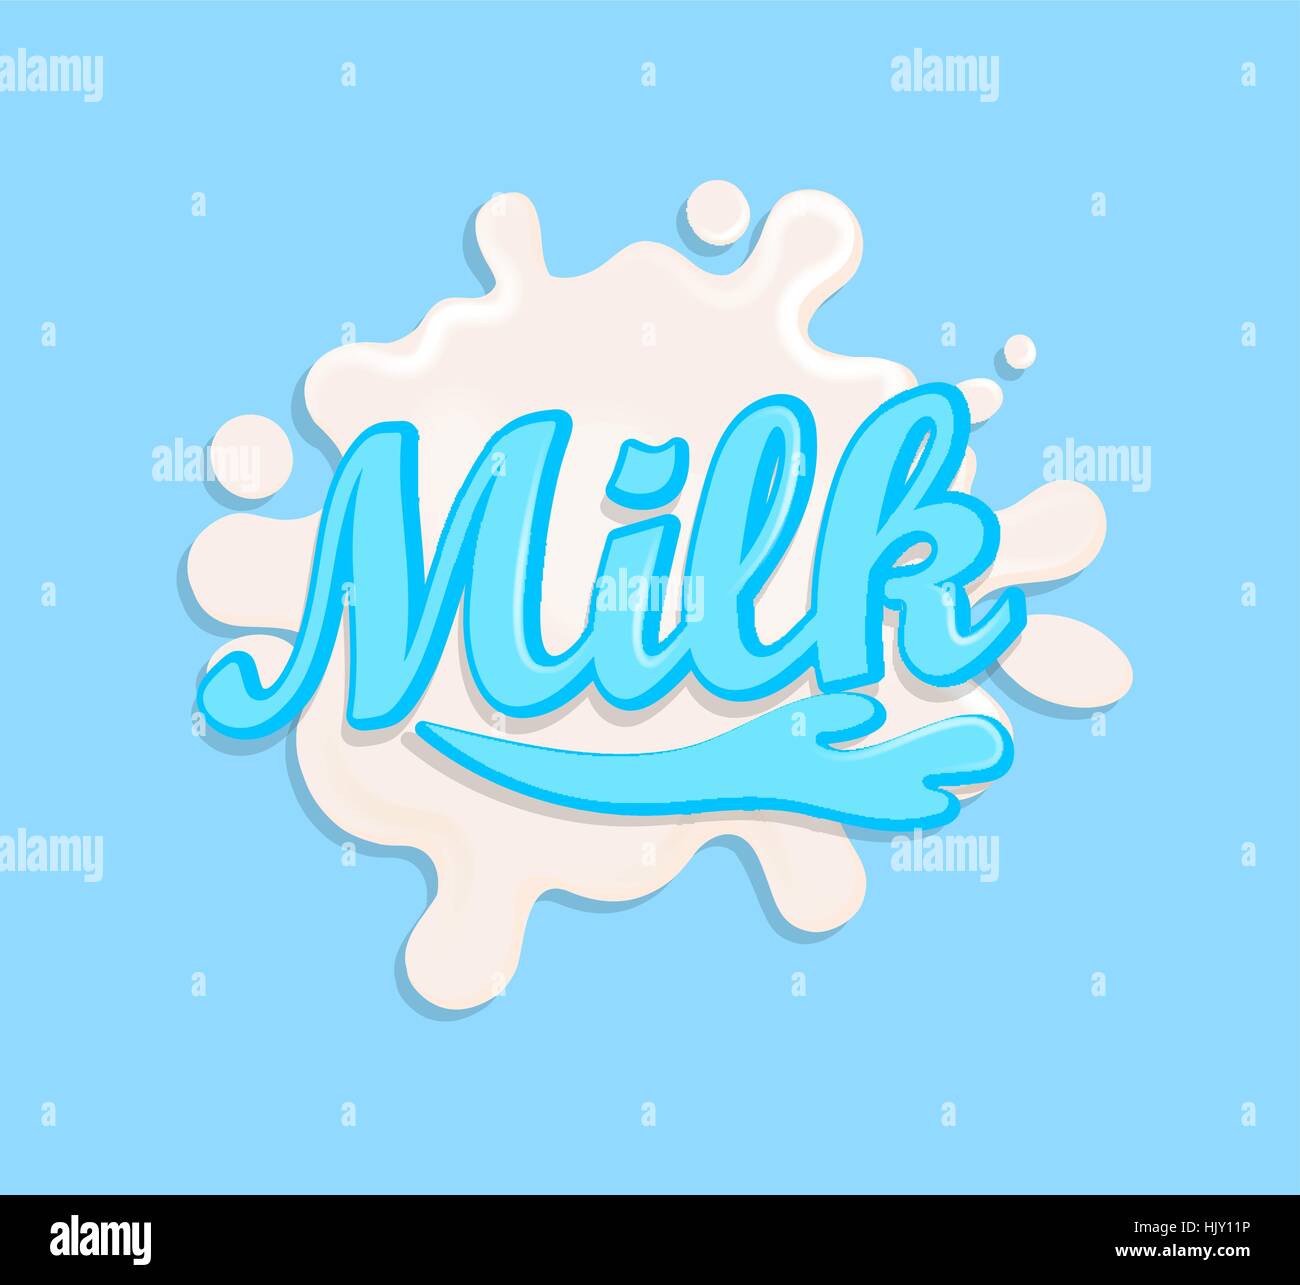 Milch-Label Splash. Blot und Schrift auf blauem Hintergrund. Spritzen Sie und tupfen Sie-Design, Form kreativen Vektor-Illustration. Stock Vektor